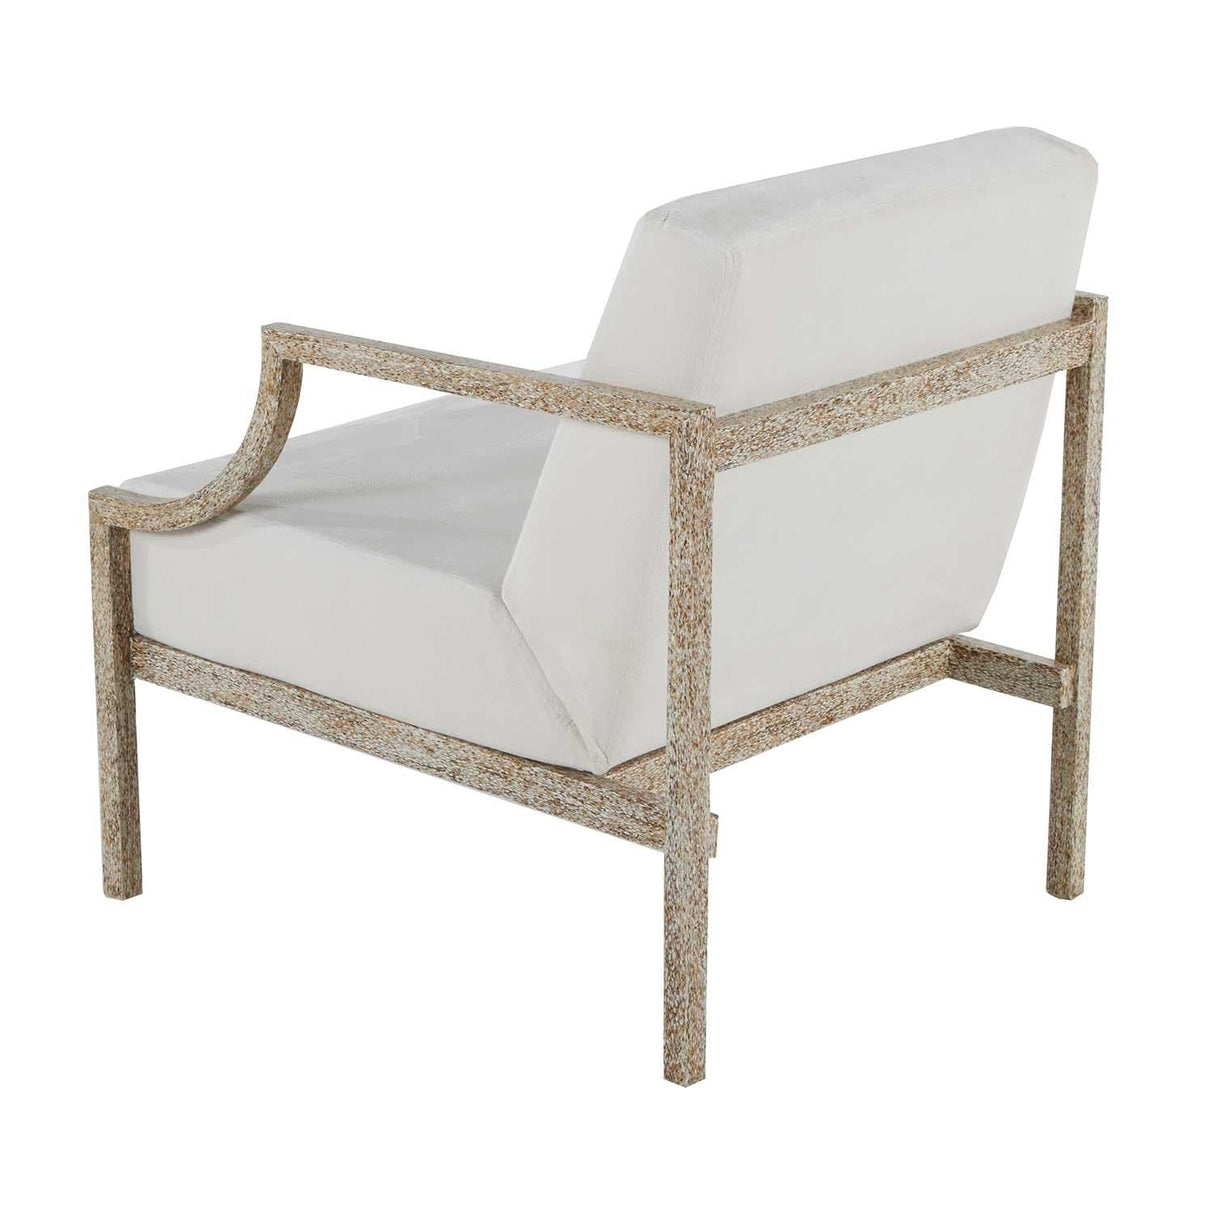 Gabby Zilar 18" Lounge Chair Furniture gabby-SCH-192371